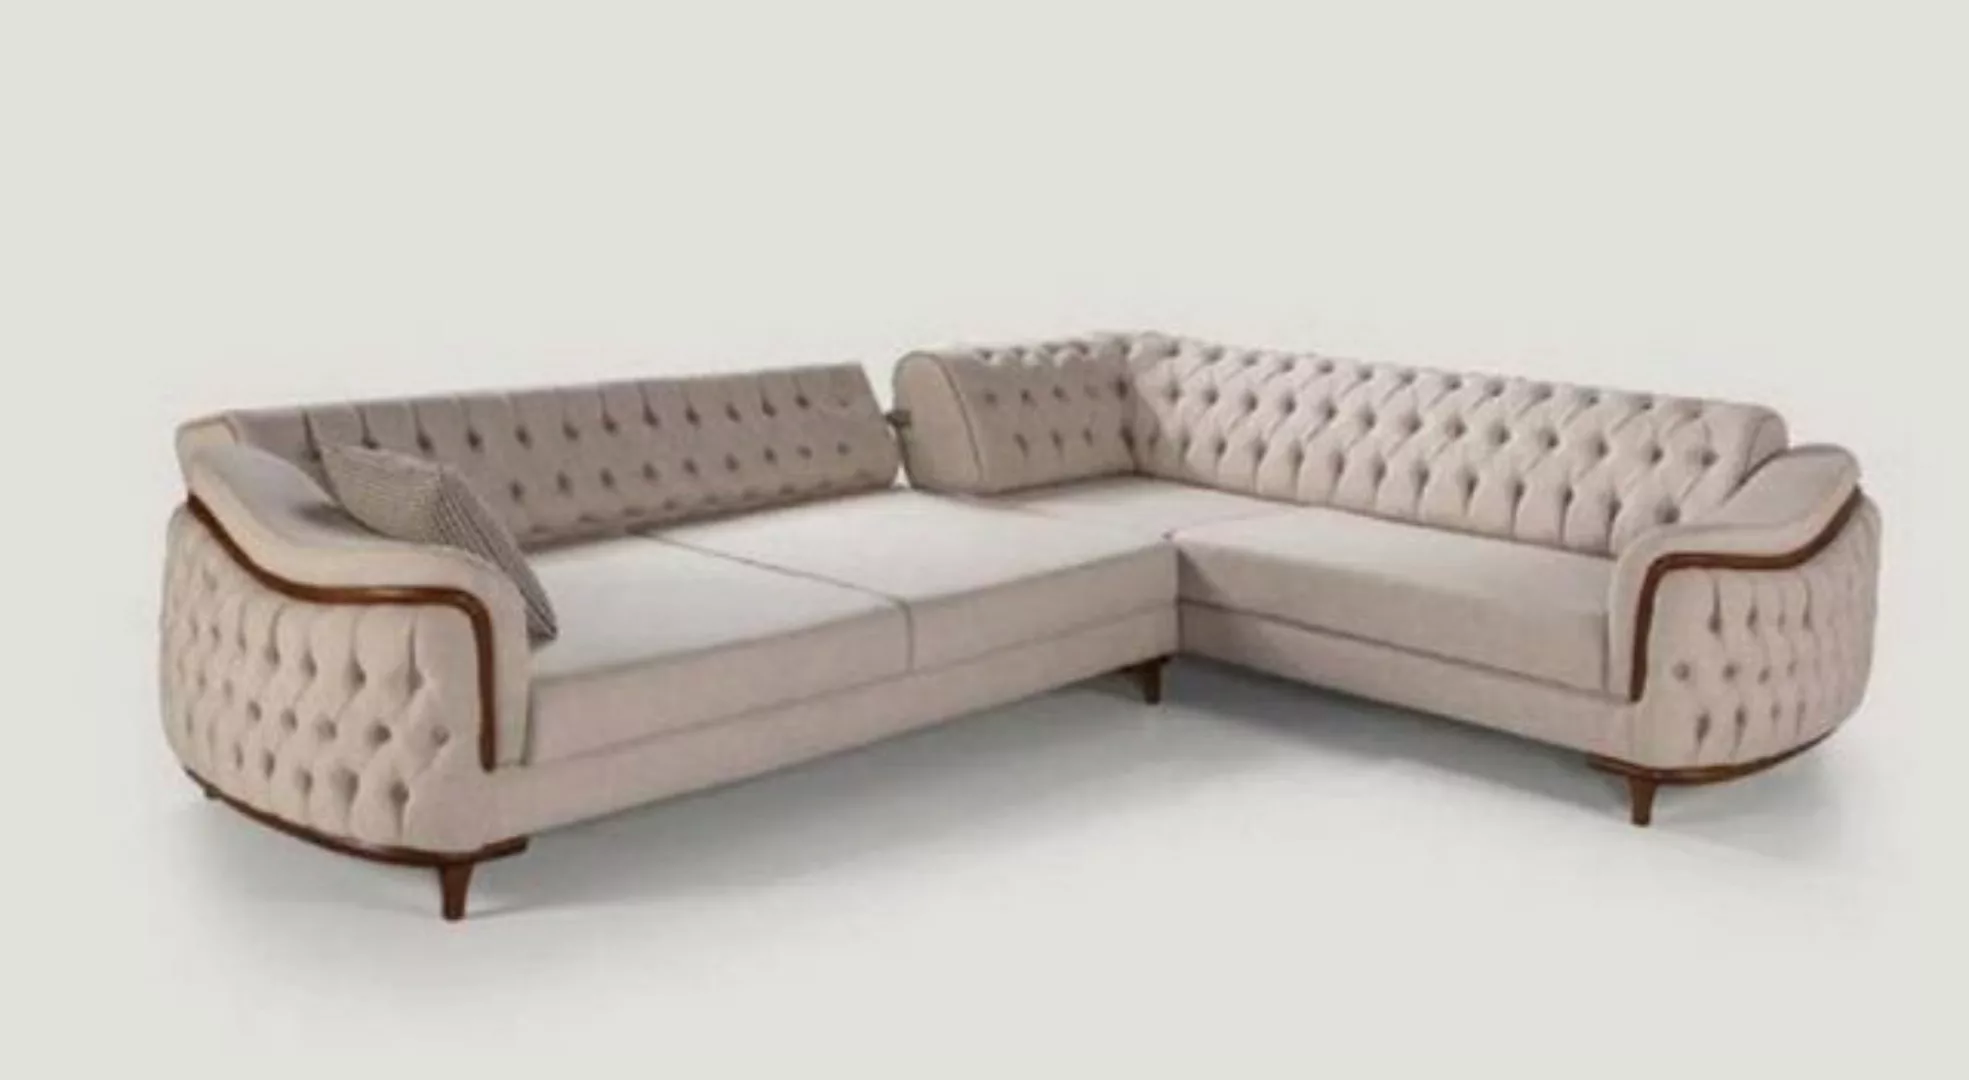 JVmoebel Ecksofa Beige Chesterfield Couch mit Holz Elementen Luxus Ecksofa günstig online kaufen